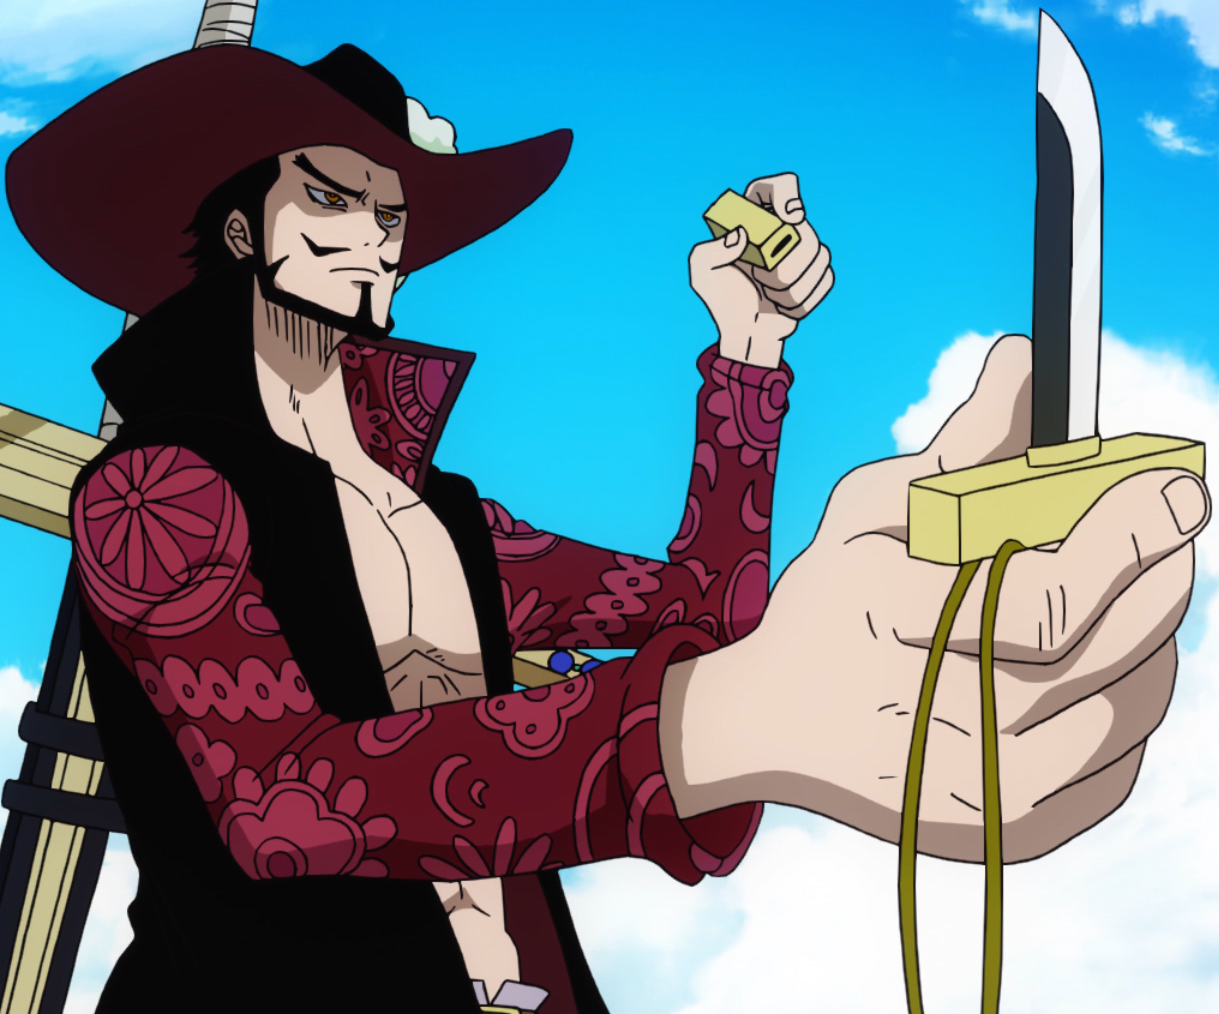 Espada Mihawk, One Piece ⚔️ Tienda Medieval